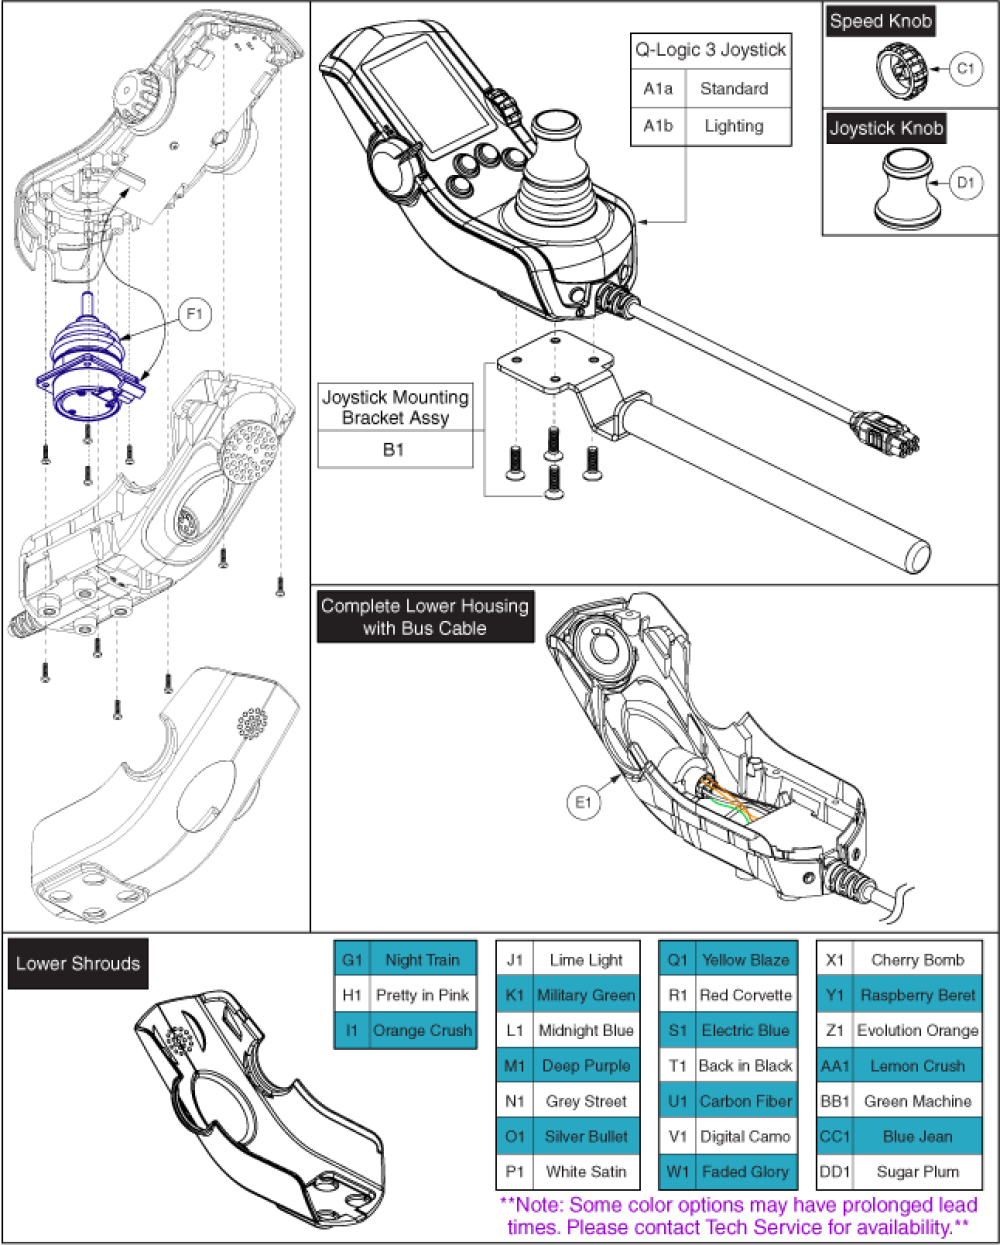 Q-logic 3 Joystick, Components, & Shrouds parts diagram